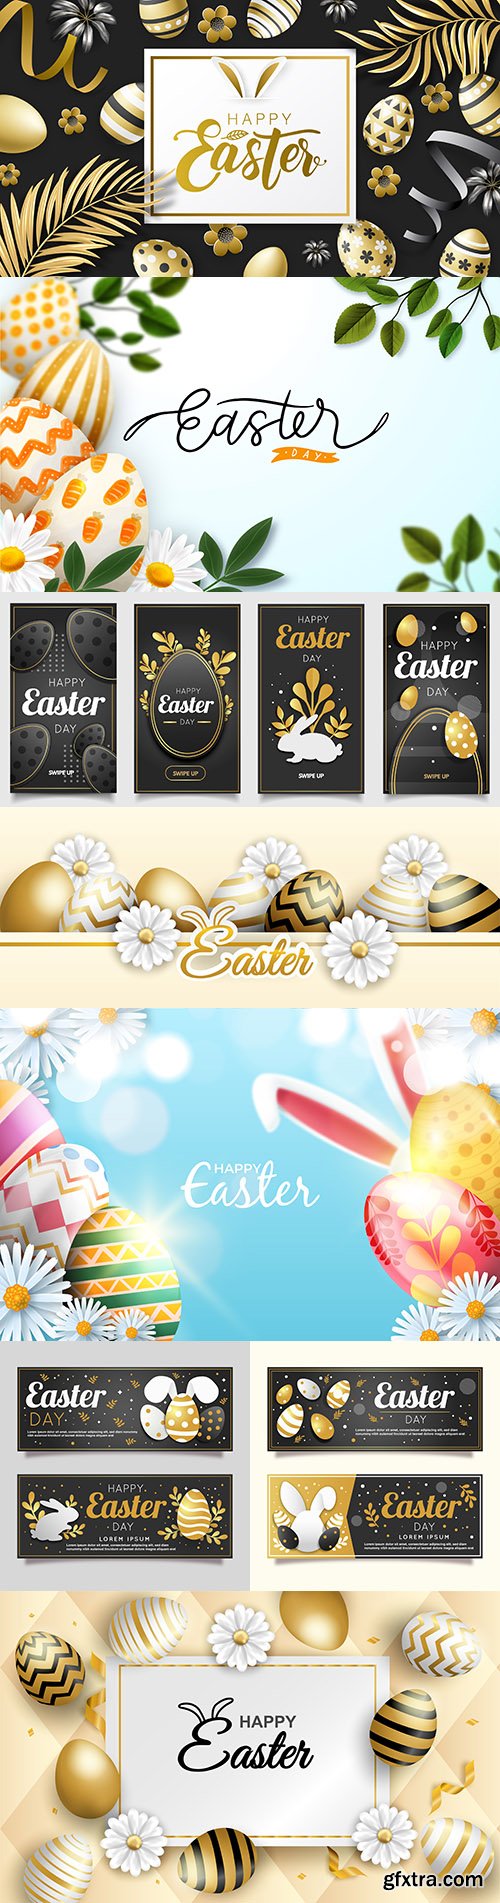 Happy Easter gold decorative illustration design 4